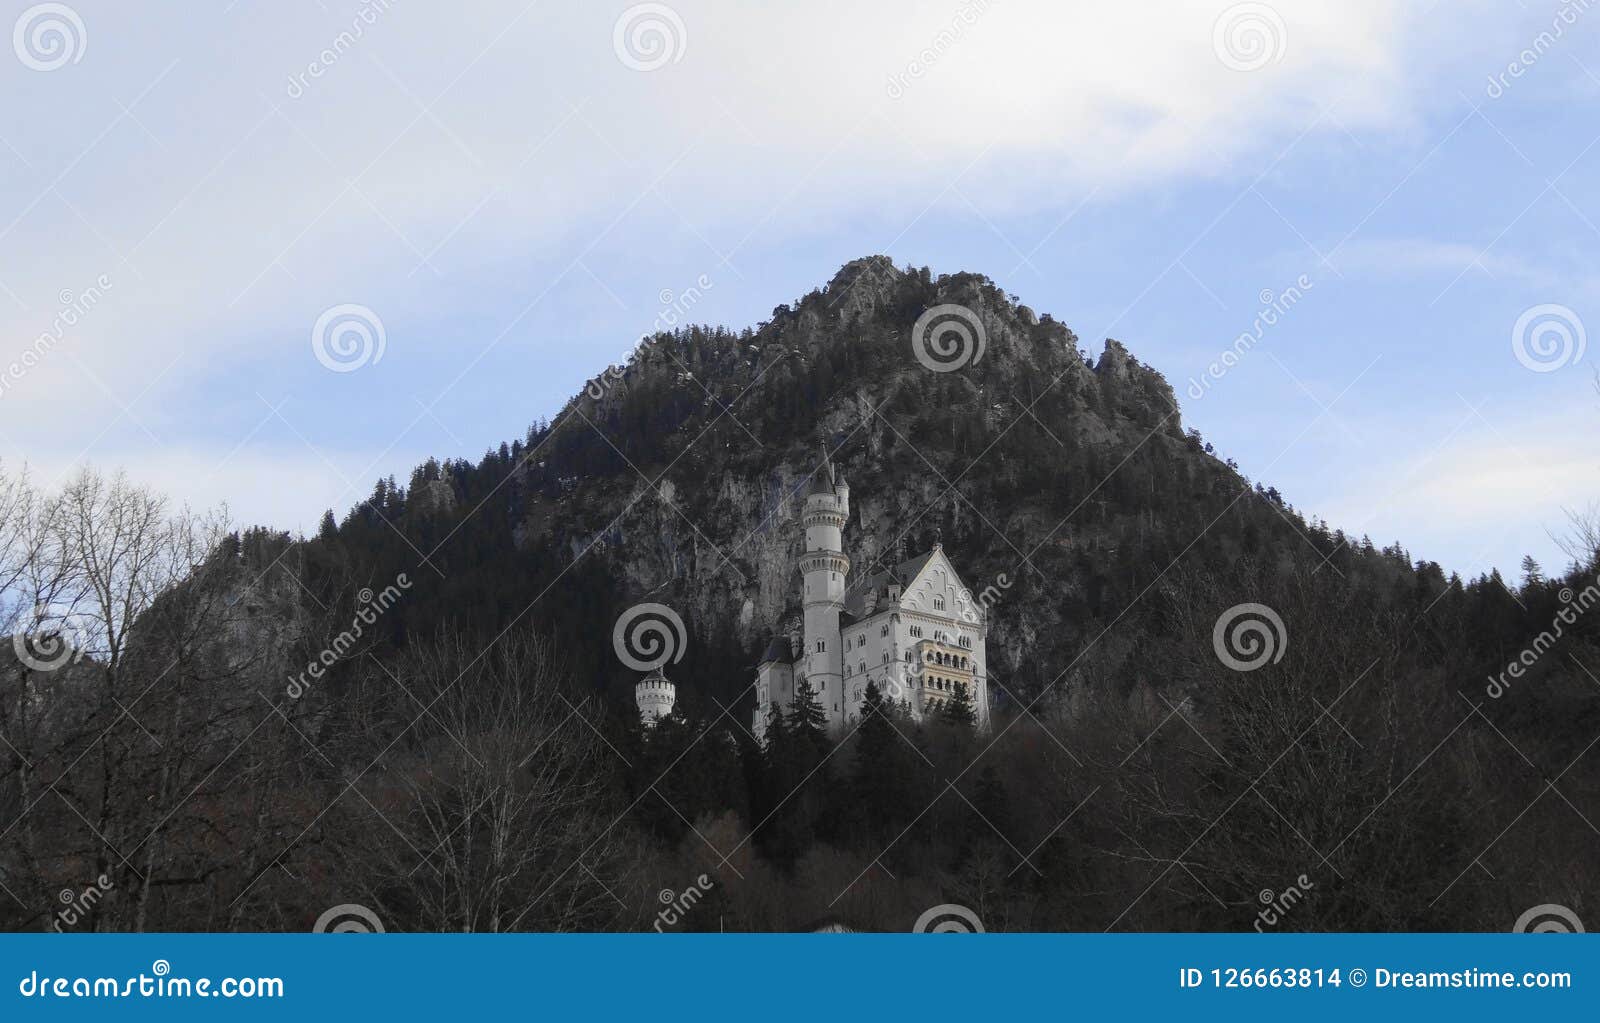 castle mountain baviera germany